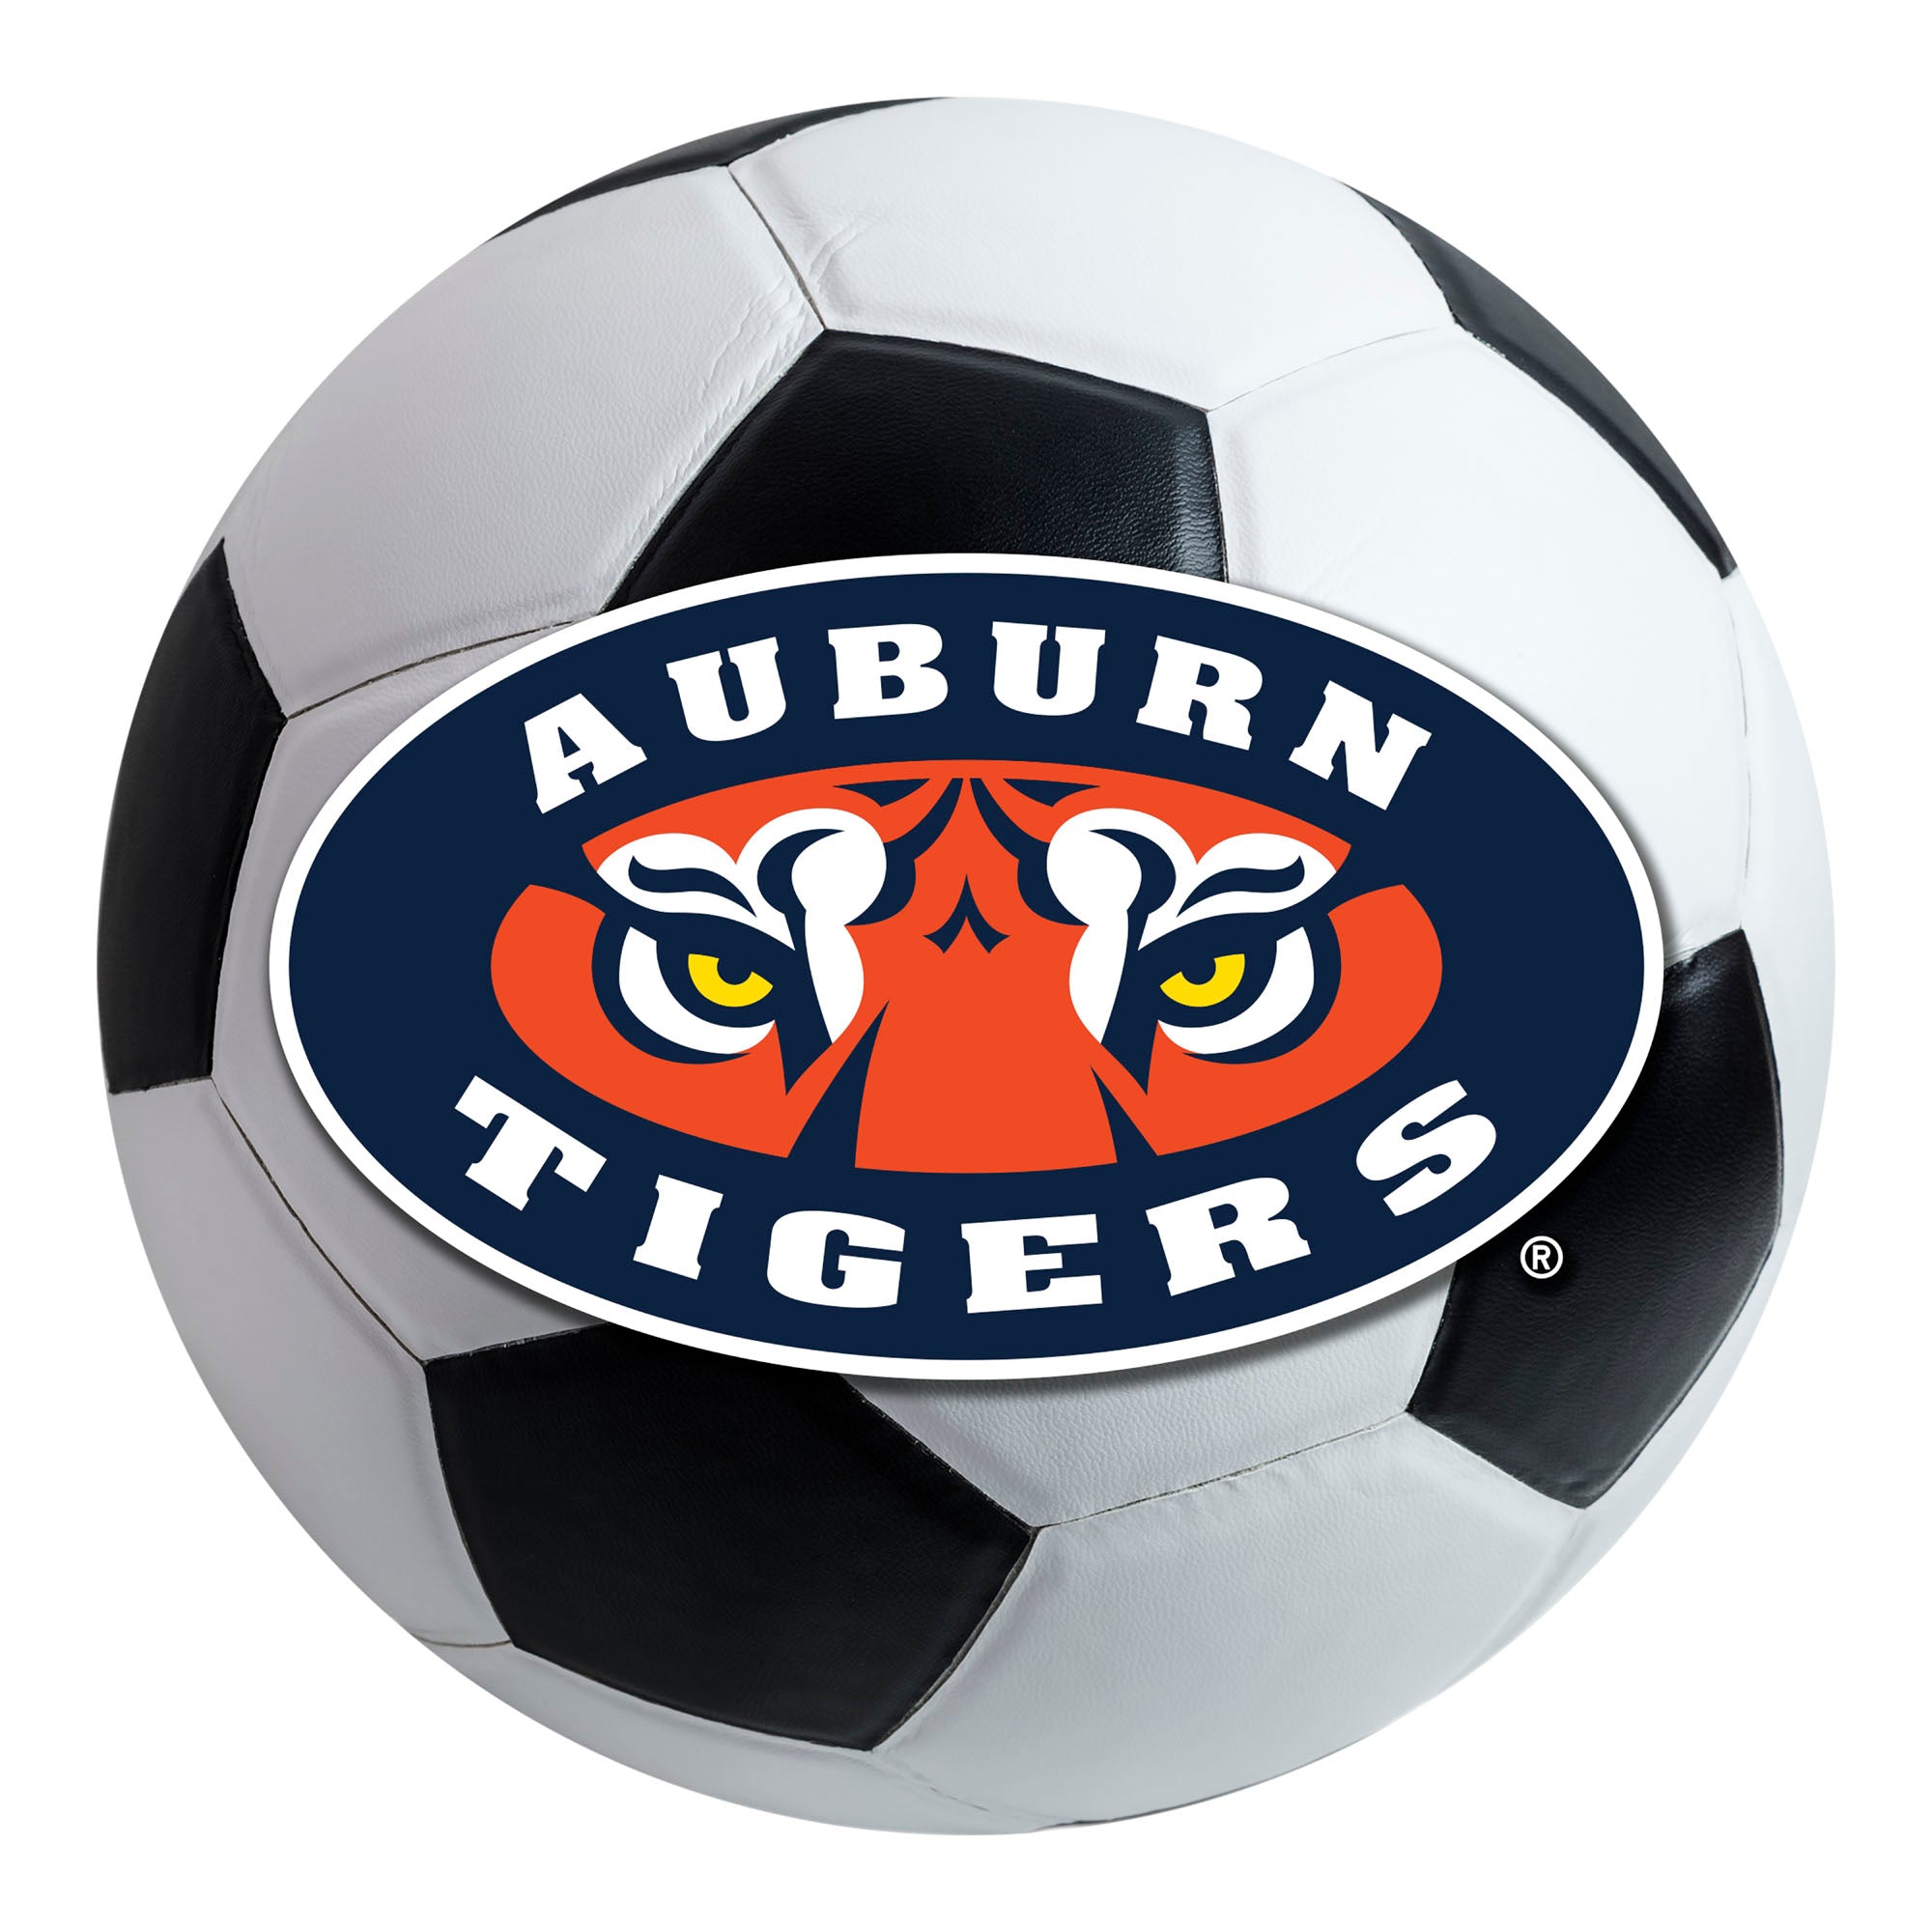 FANMATS, Auburn University Tiger Eyes Soccer Ball Rug - 27in. Diameter